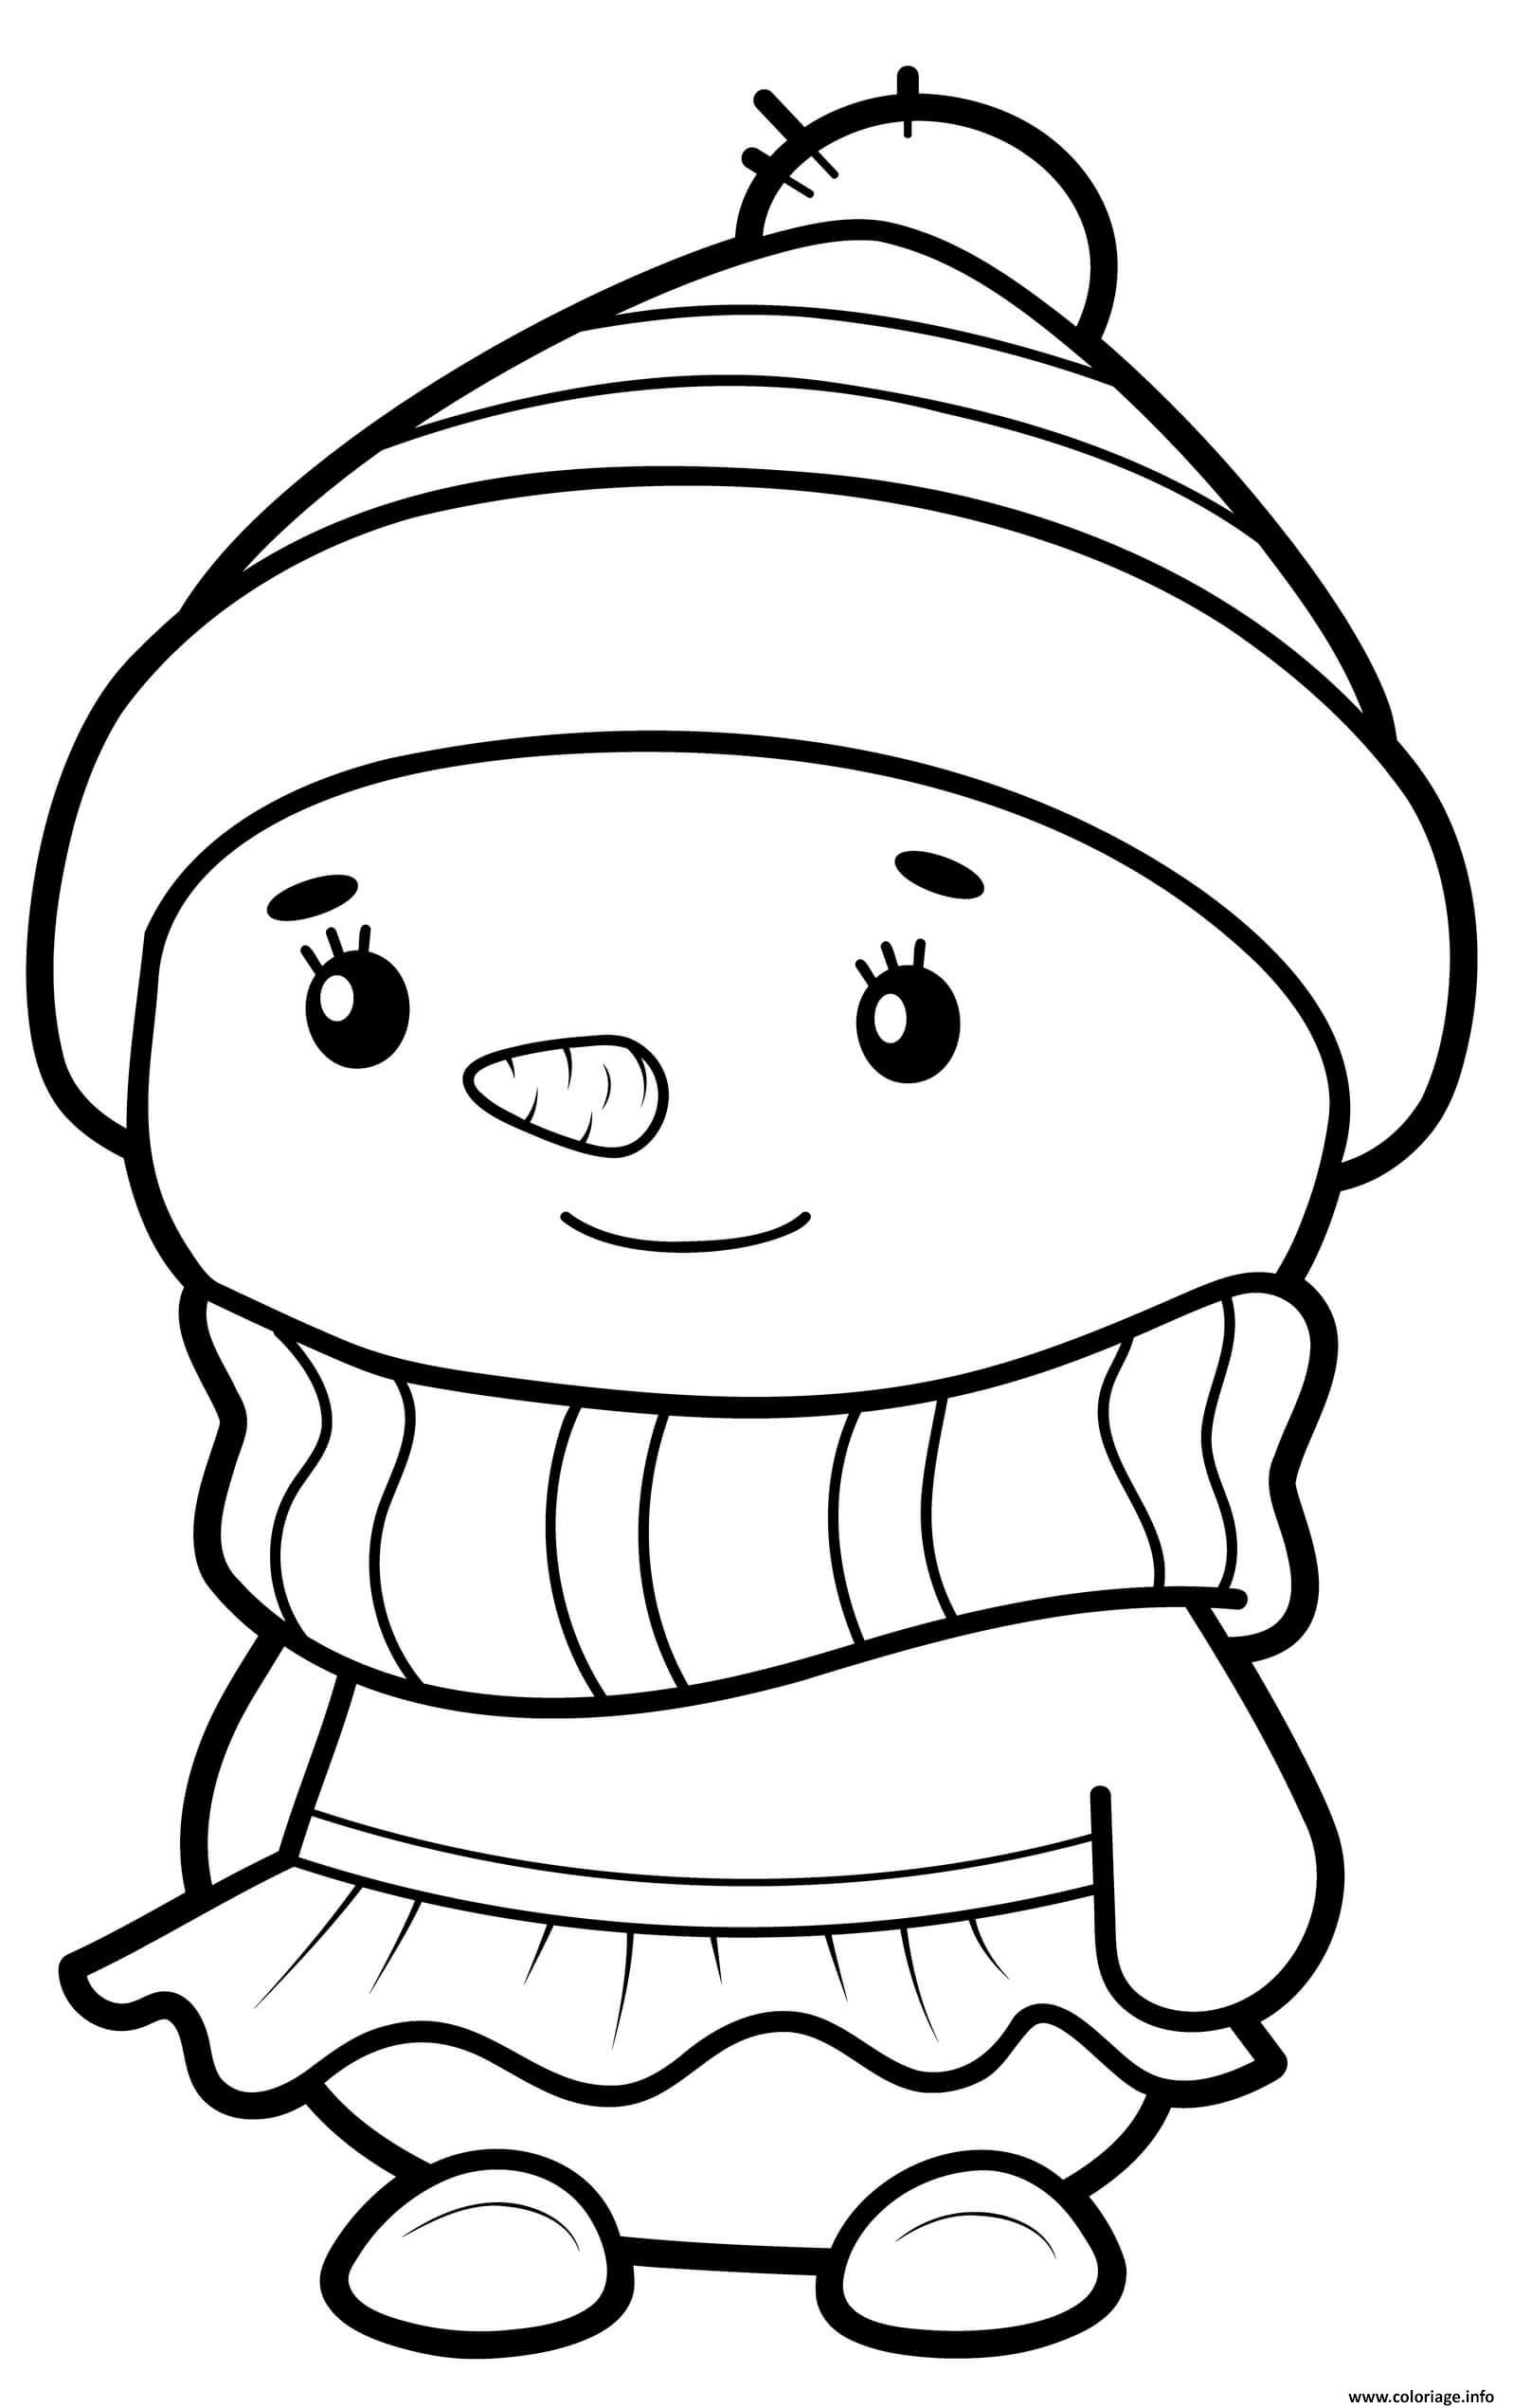 Dessin bonhomme de neige fille habille avec une robe et un chapeau Coloriage Gratuit à Imprimer